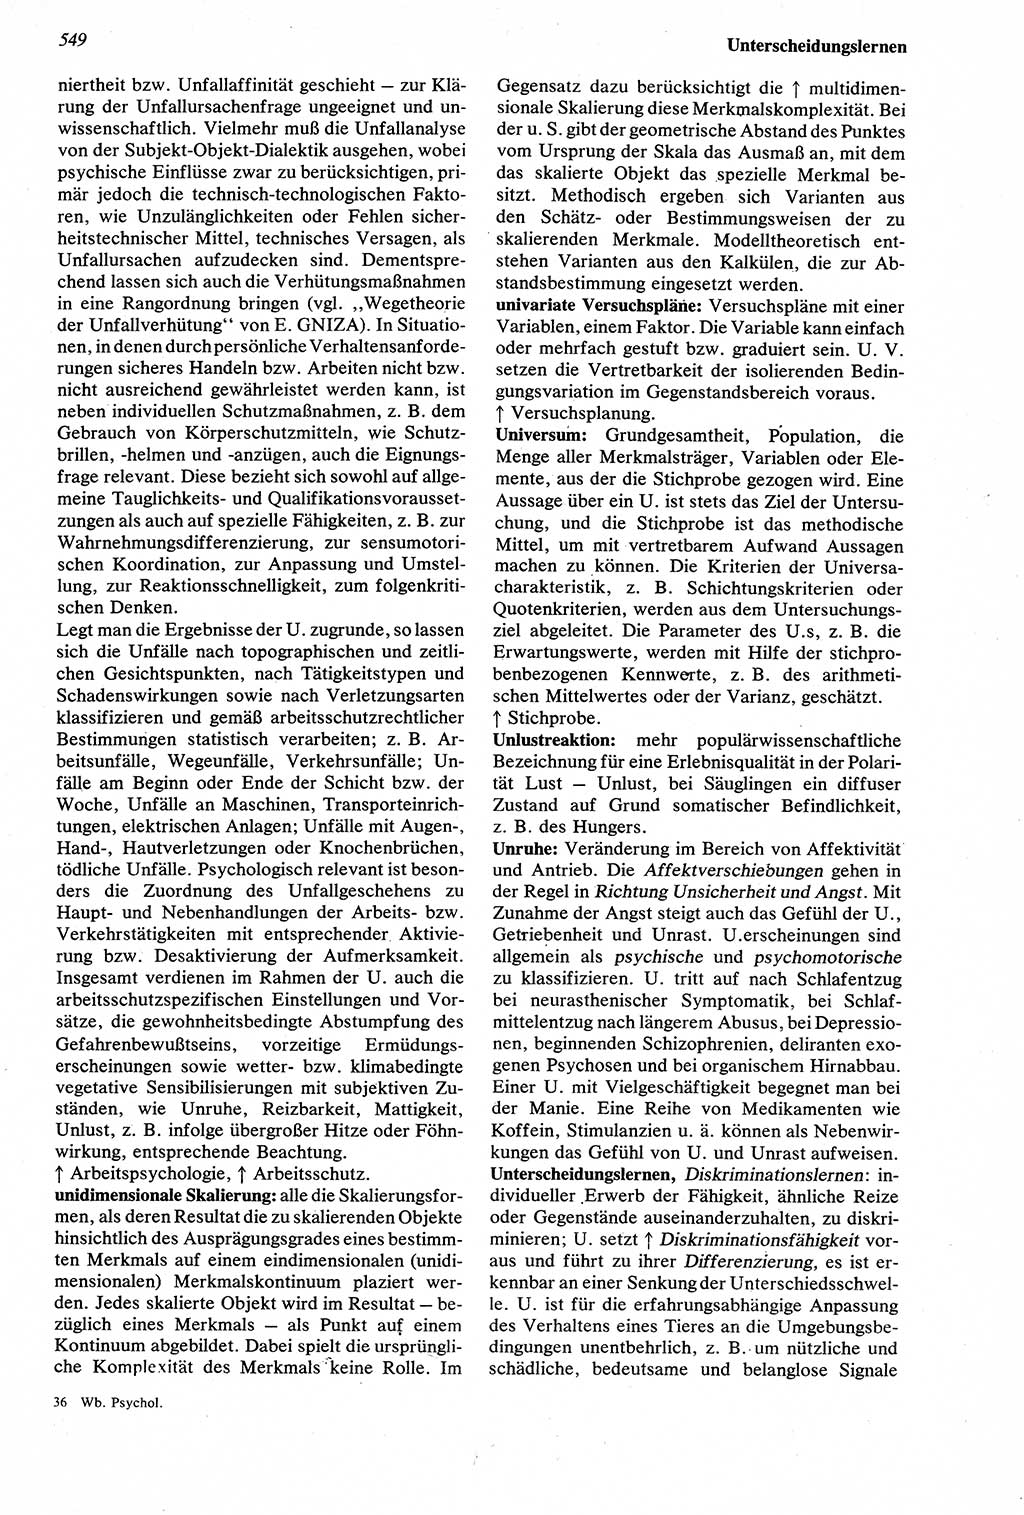 Wörterbuch der Psychologie [Deutsche Demokratische Republik (DDR)] 1976, Seite 549 (Wb. Psych. DDR 1976, S. 549)